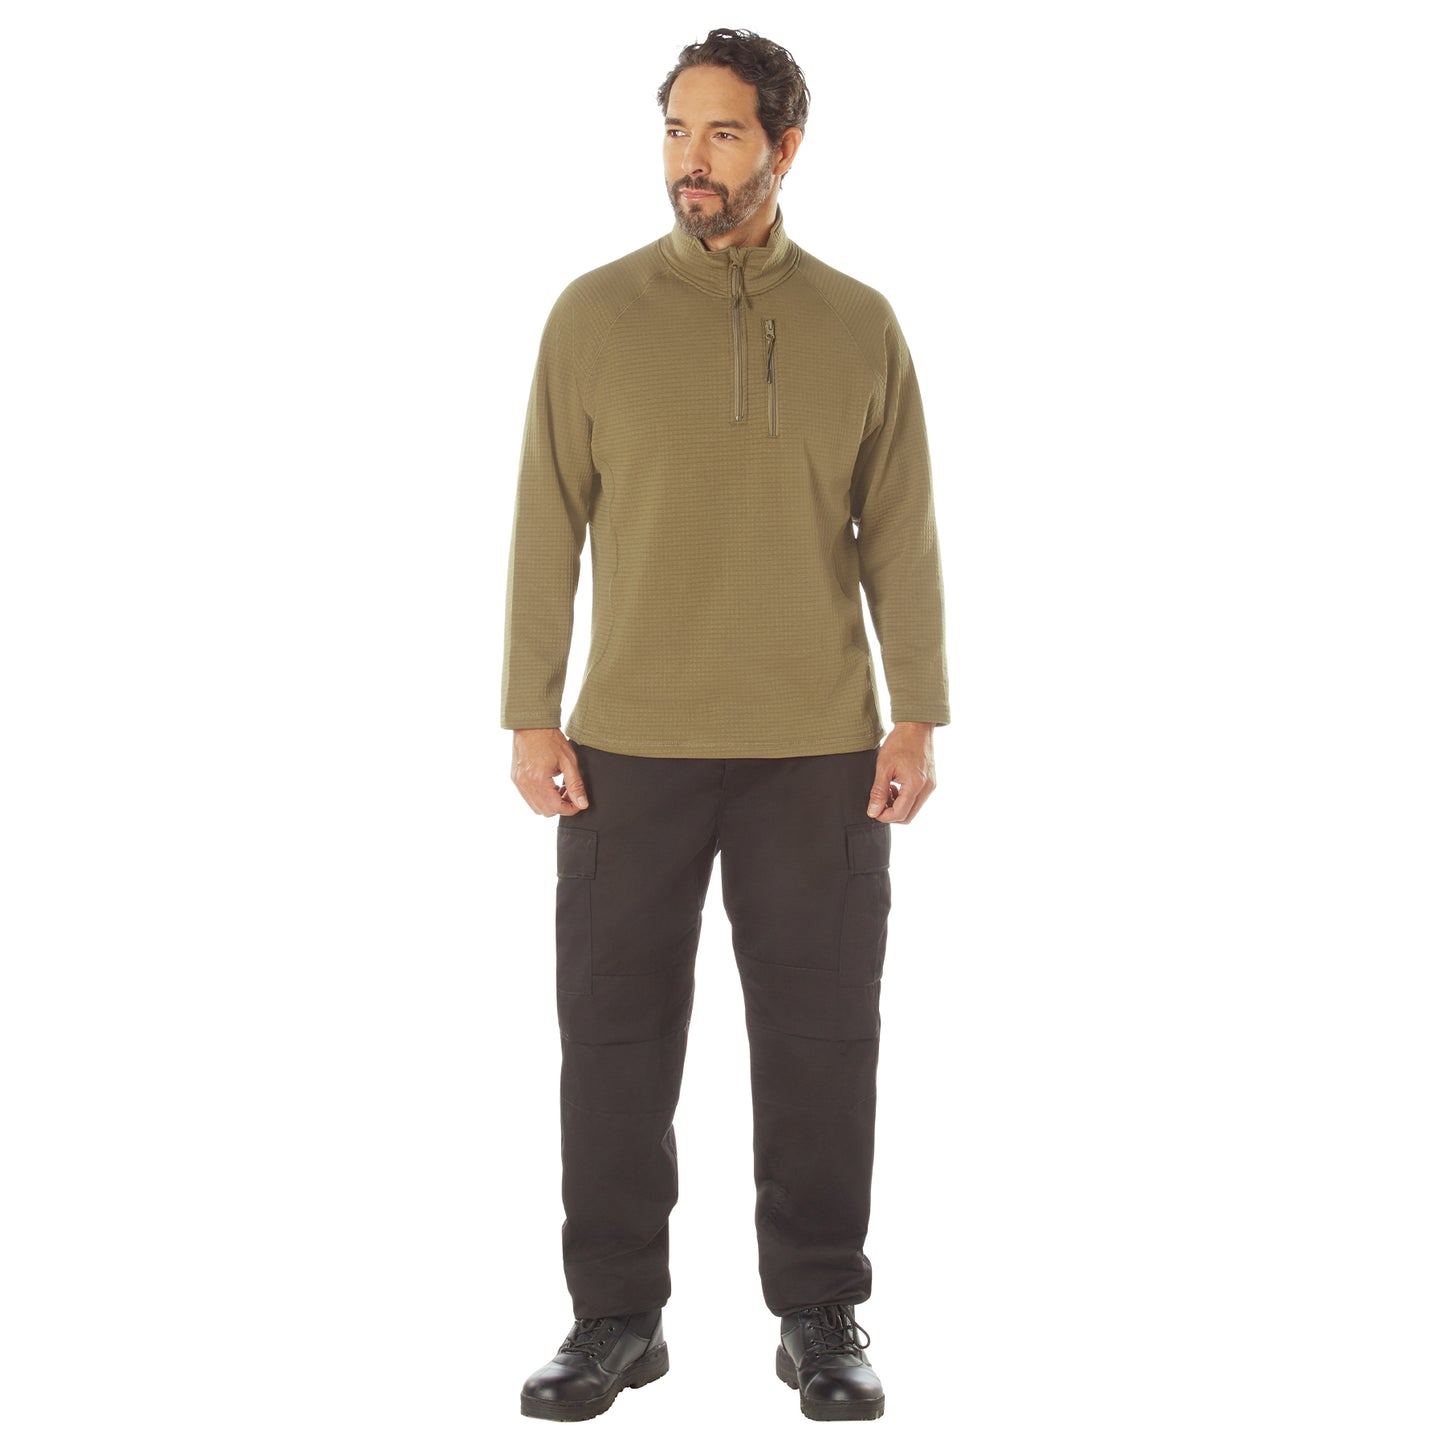 Men's Grid Fleece Qurarter-Zip Pullover Sweatshirt Breathable & Flexible